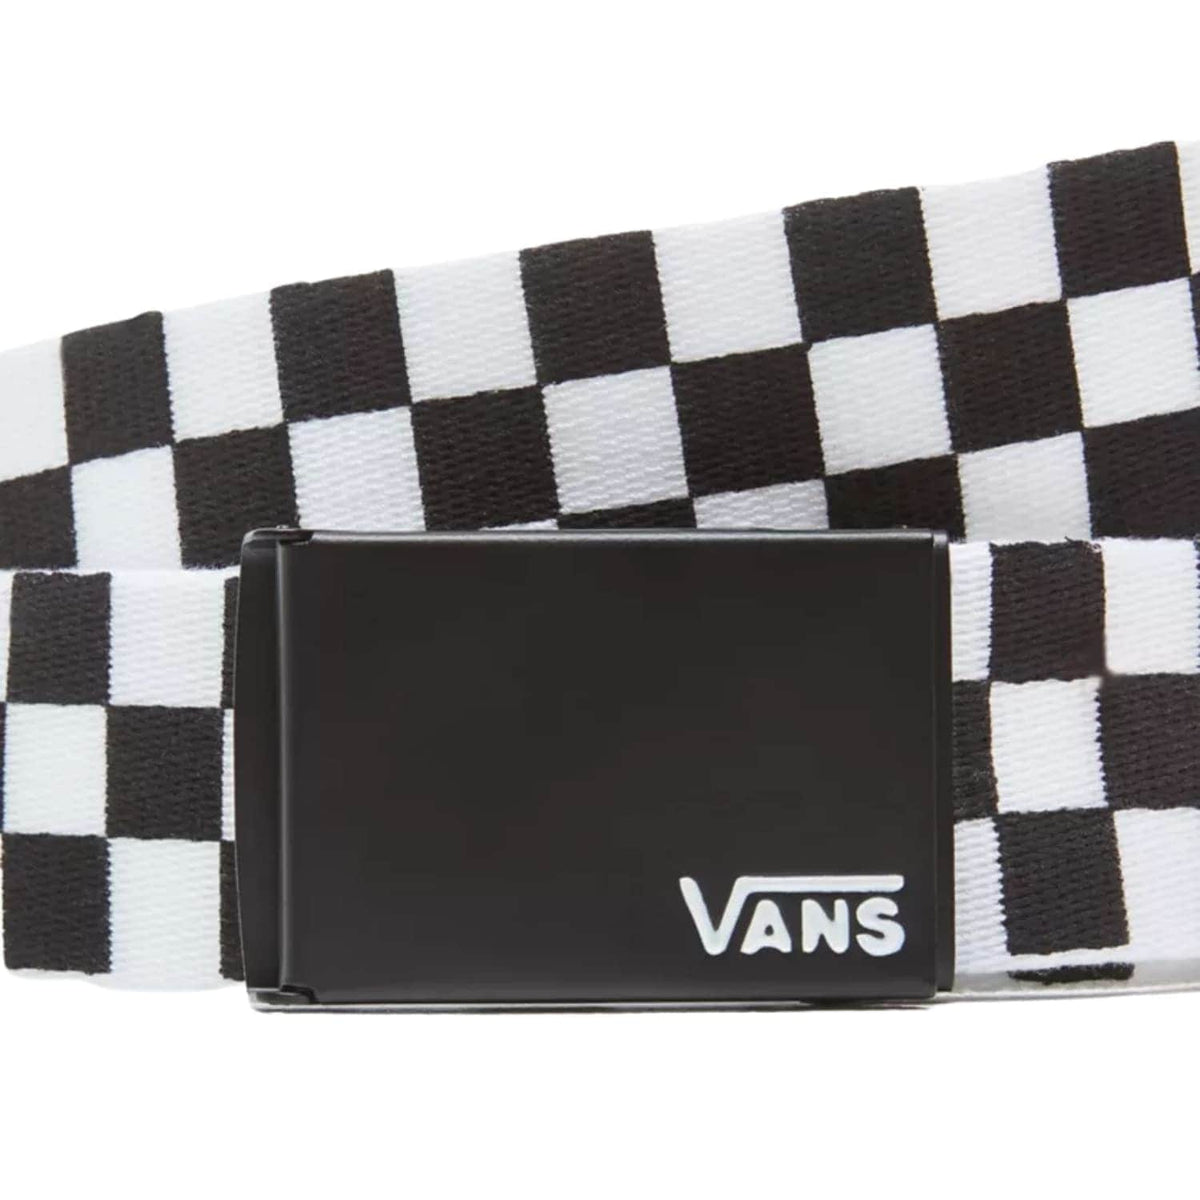 Vans Deppster II Web Belt - Black/White - Mens Web Belt by Vans One Size